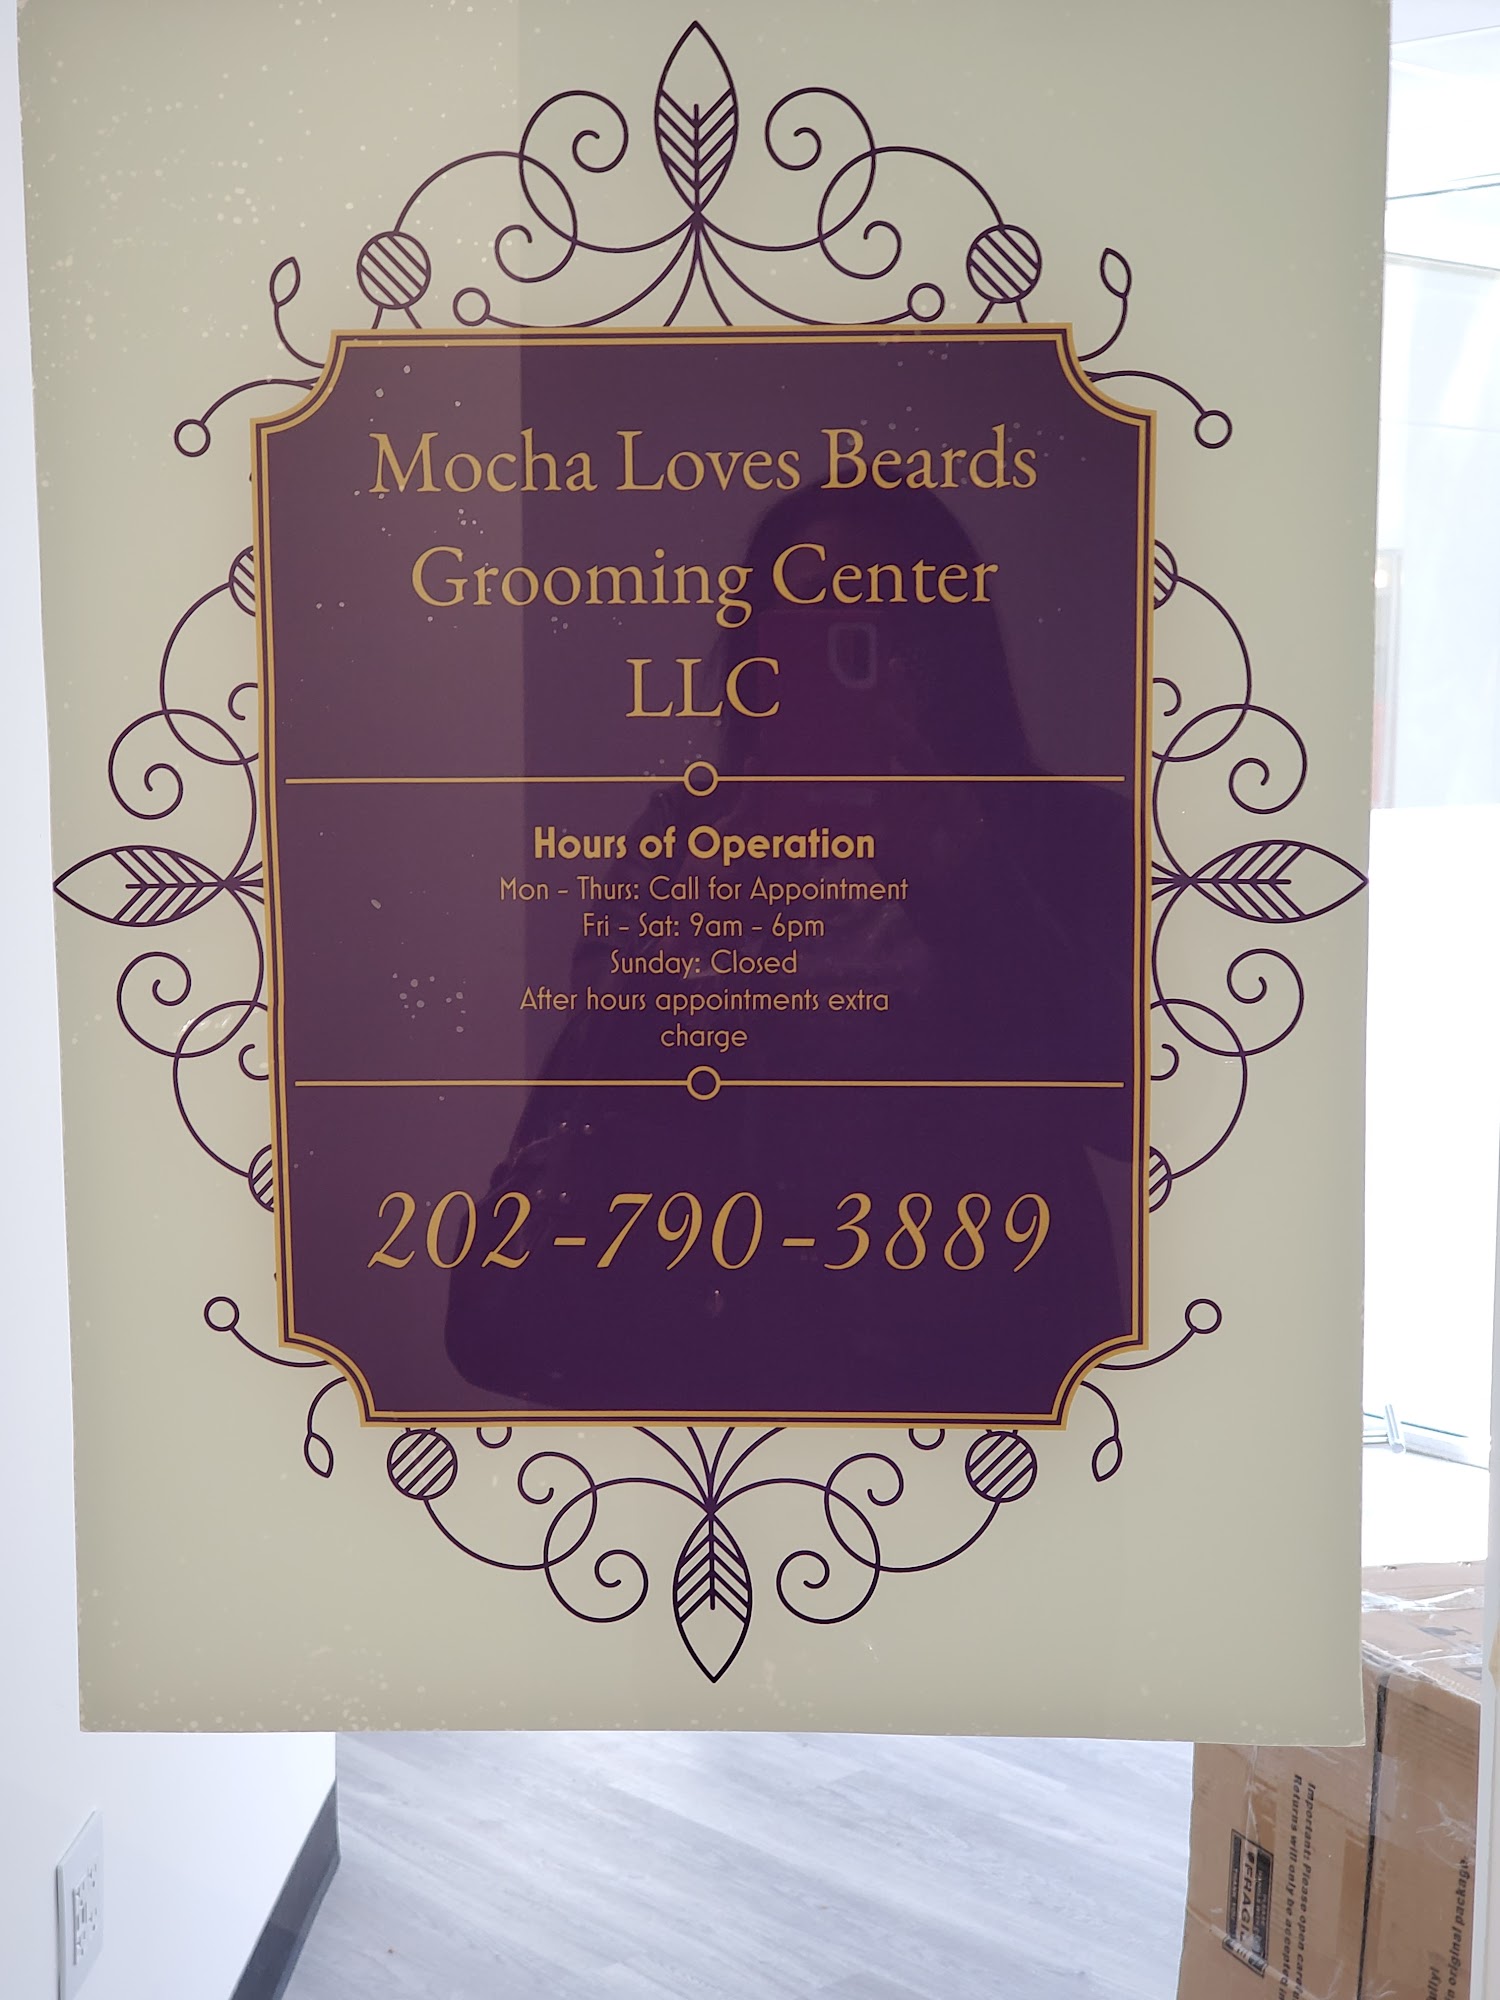 Mocha Loves Beards Grooming Center LLC